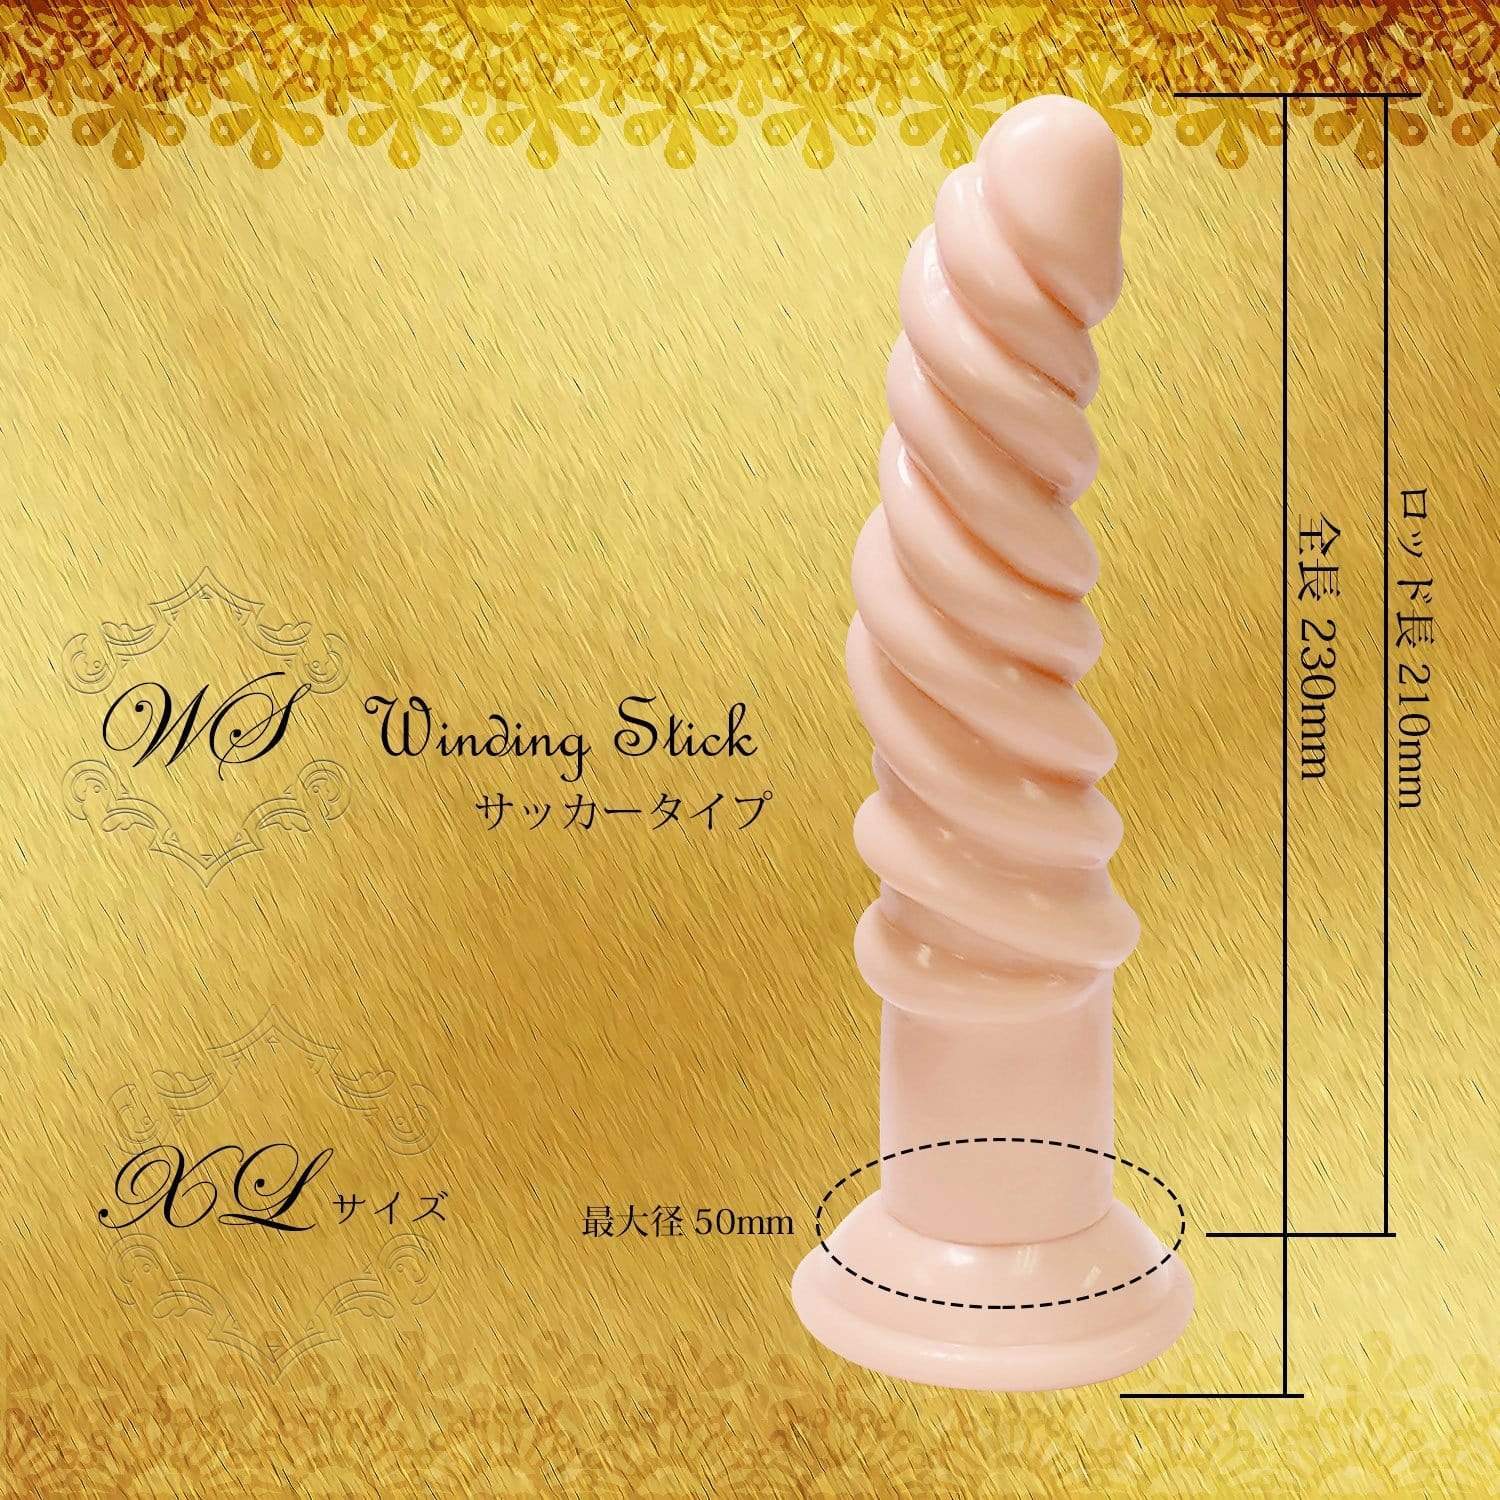 Magic Eyes - Winding Stick Sucker XL Dildo (Beige) -  Non Realistic Dildo w/o suction cup (Non Vibration)  Durio.sg